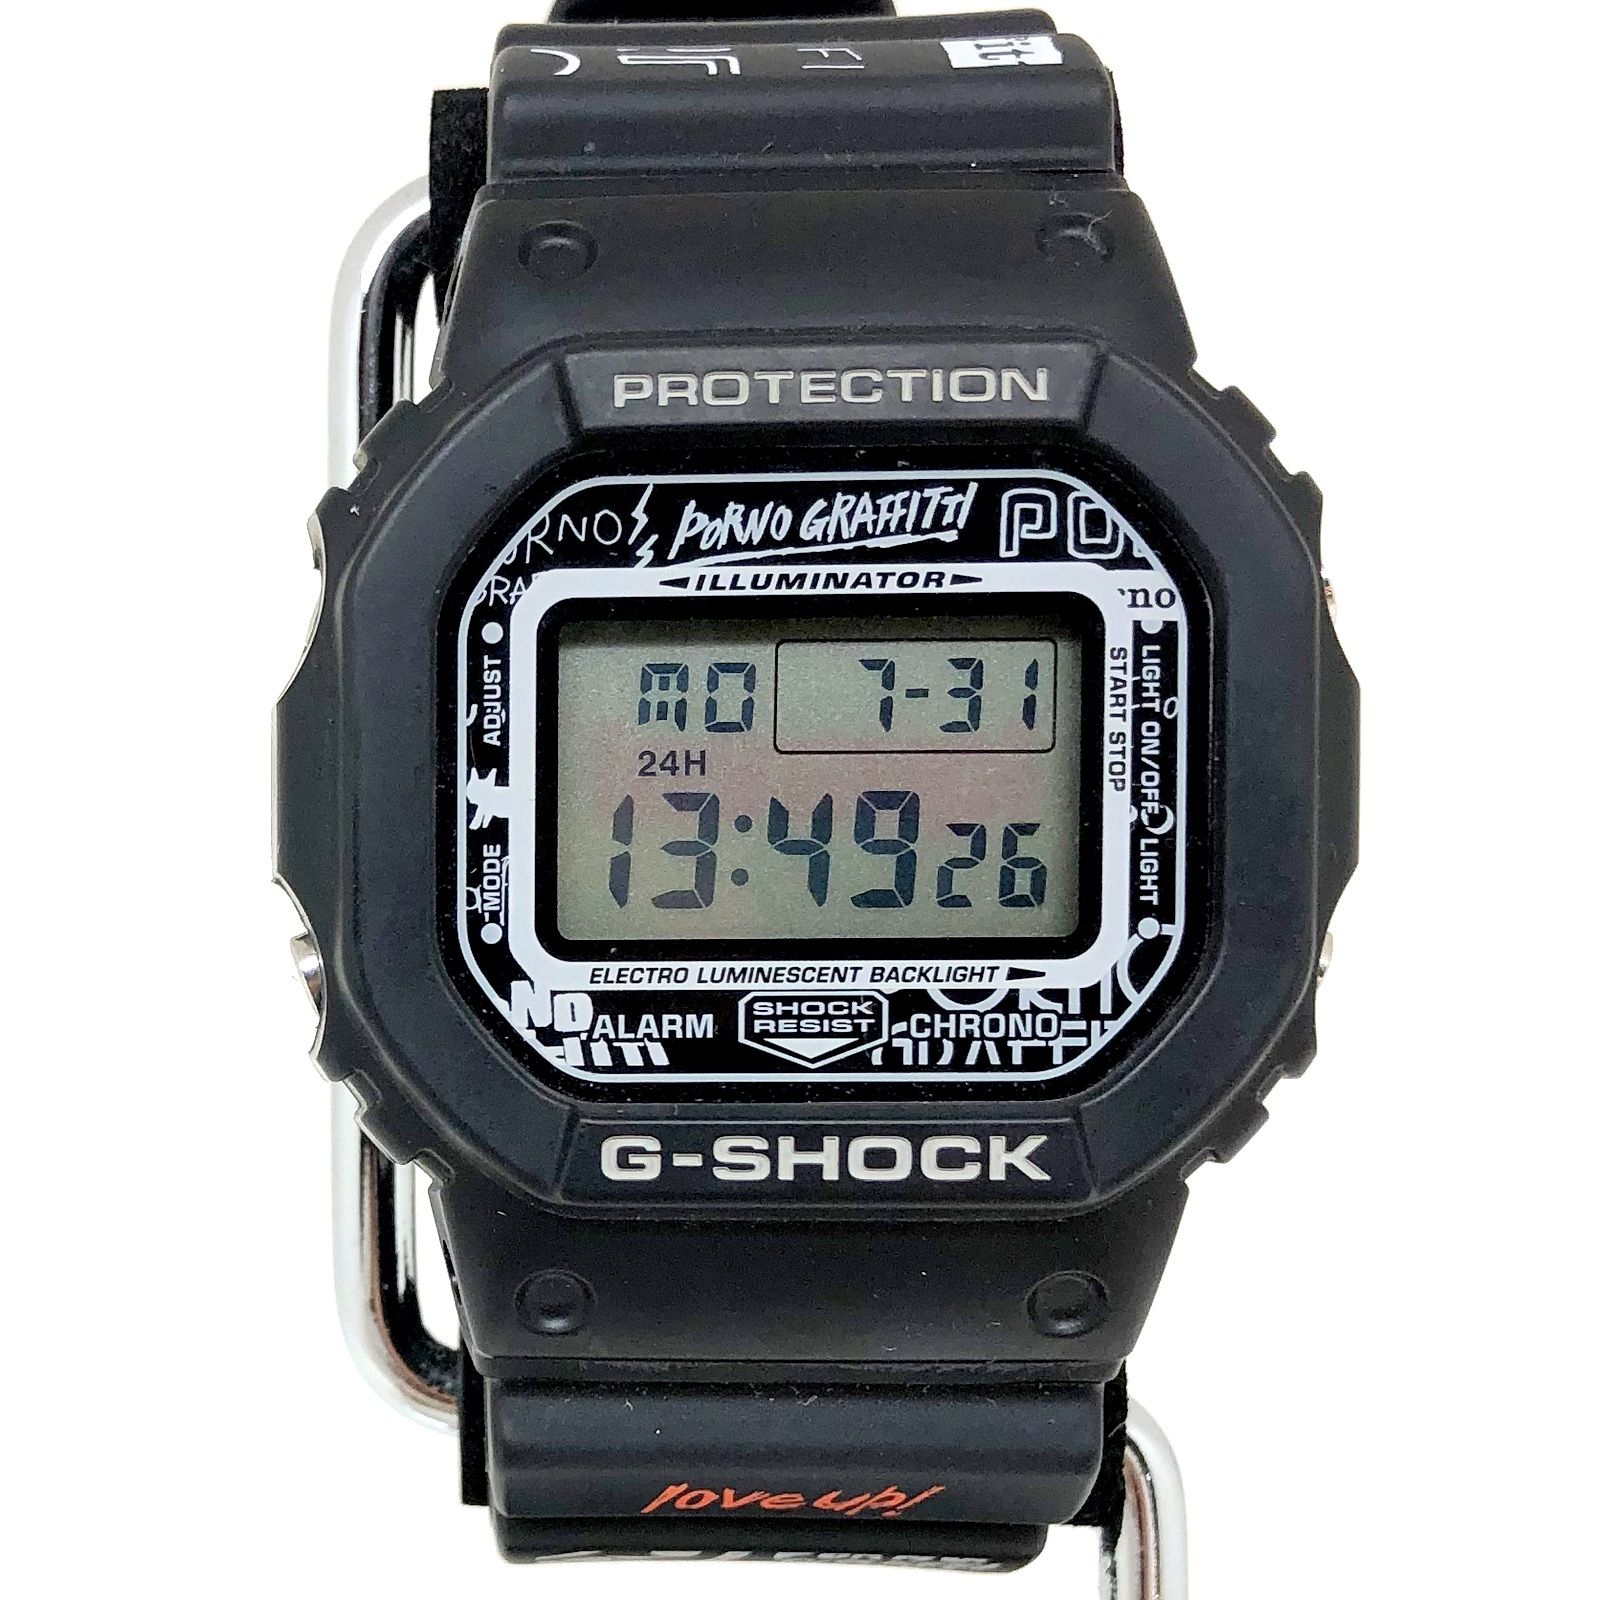 魅力のCASIO カシオ 腕時計 DW-5600VT ポルノグラフィティ love up! 20周年 ファンクラブ限定 G-SHOCK ブラック クオーツ メンズ 管理RY22000123 その他